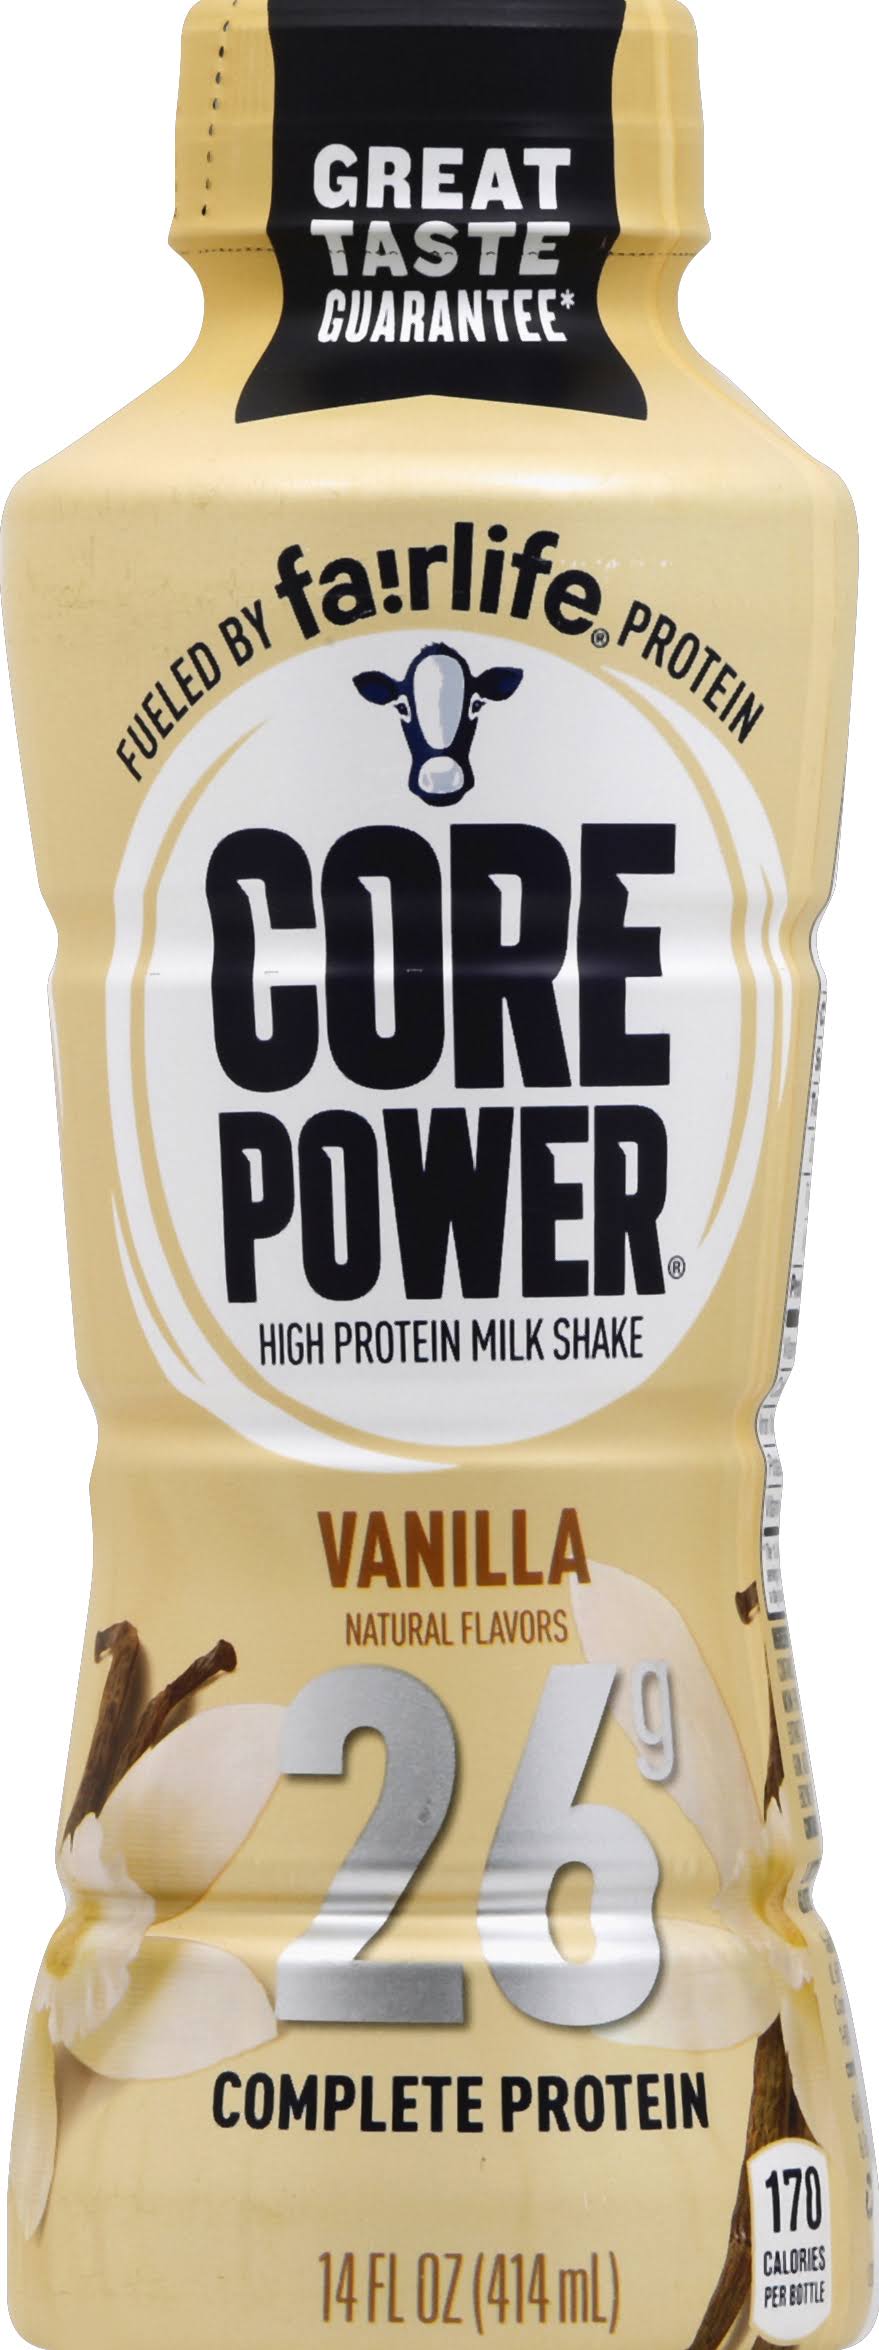 Core Power Milk Shake, High Protein, Vanilla - 14 fl oz